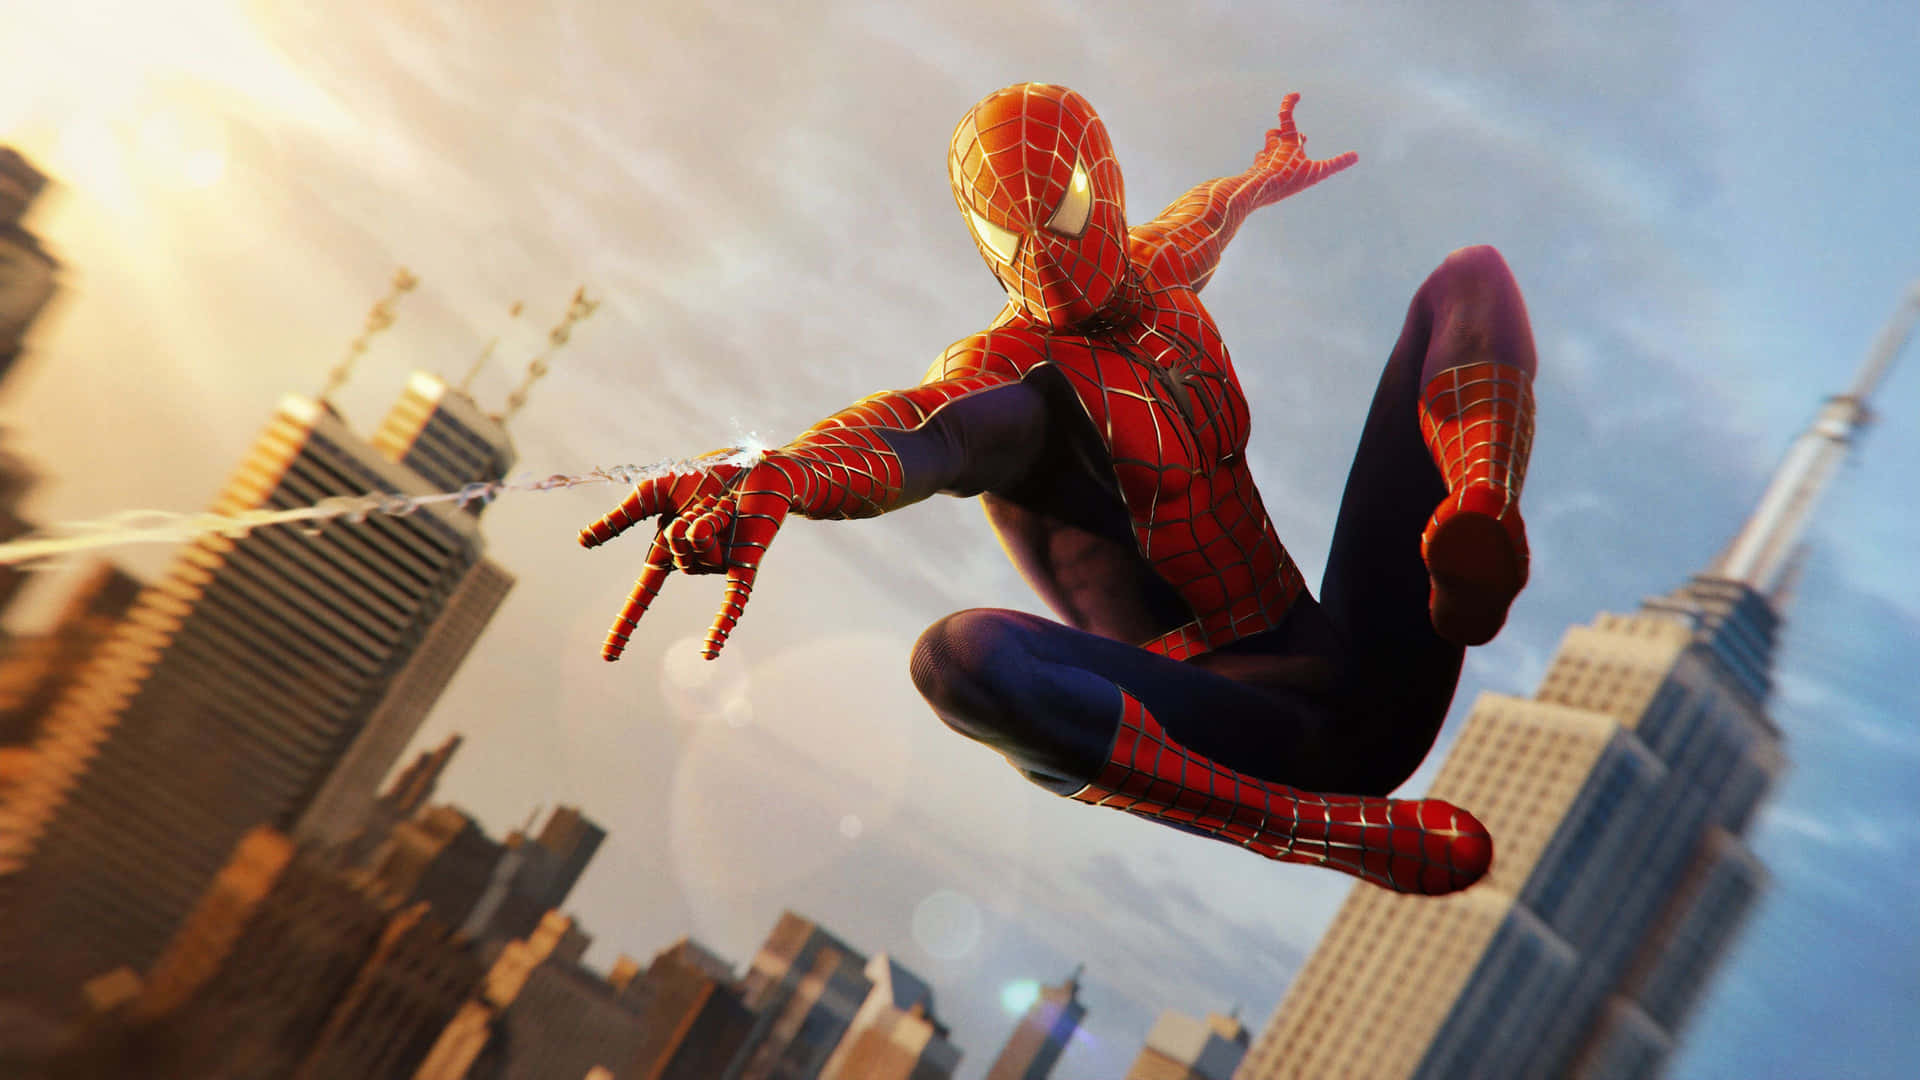 Klat til tops med Spider-Man i denne imponerende 4K-opløsning spil i New York City. Wallpaper